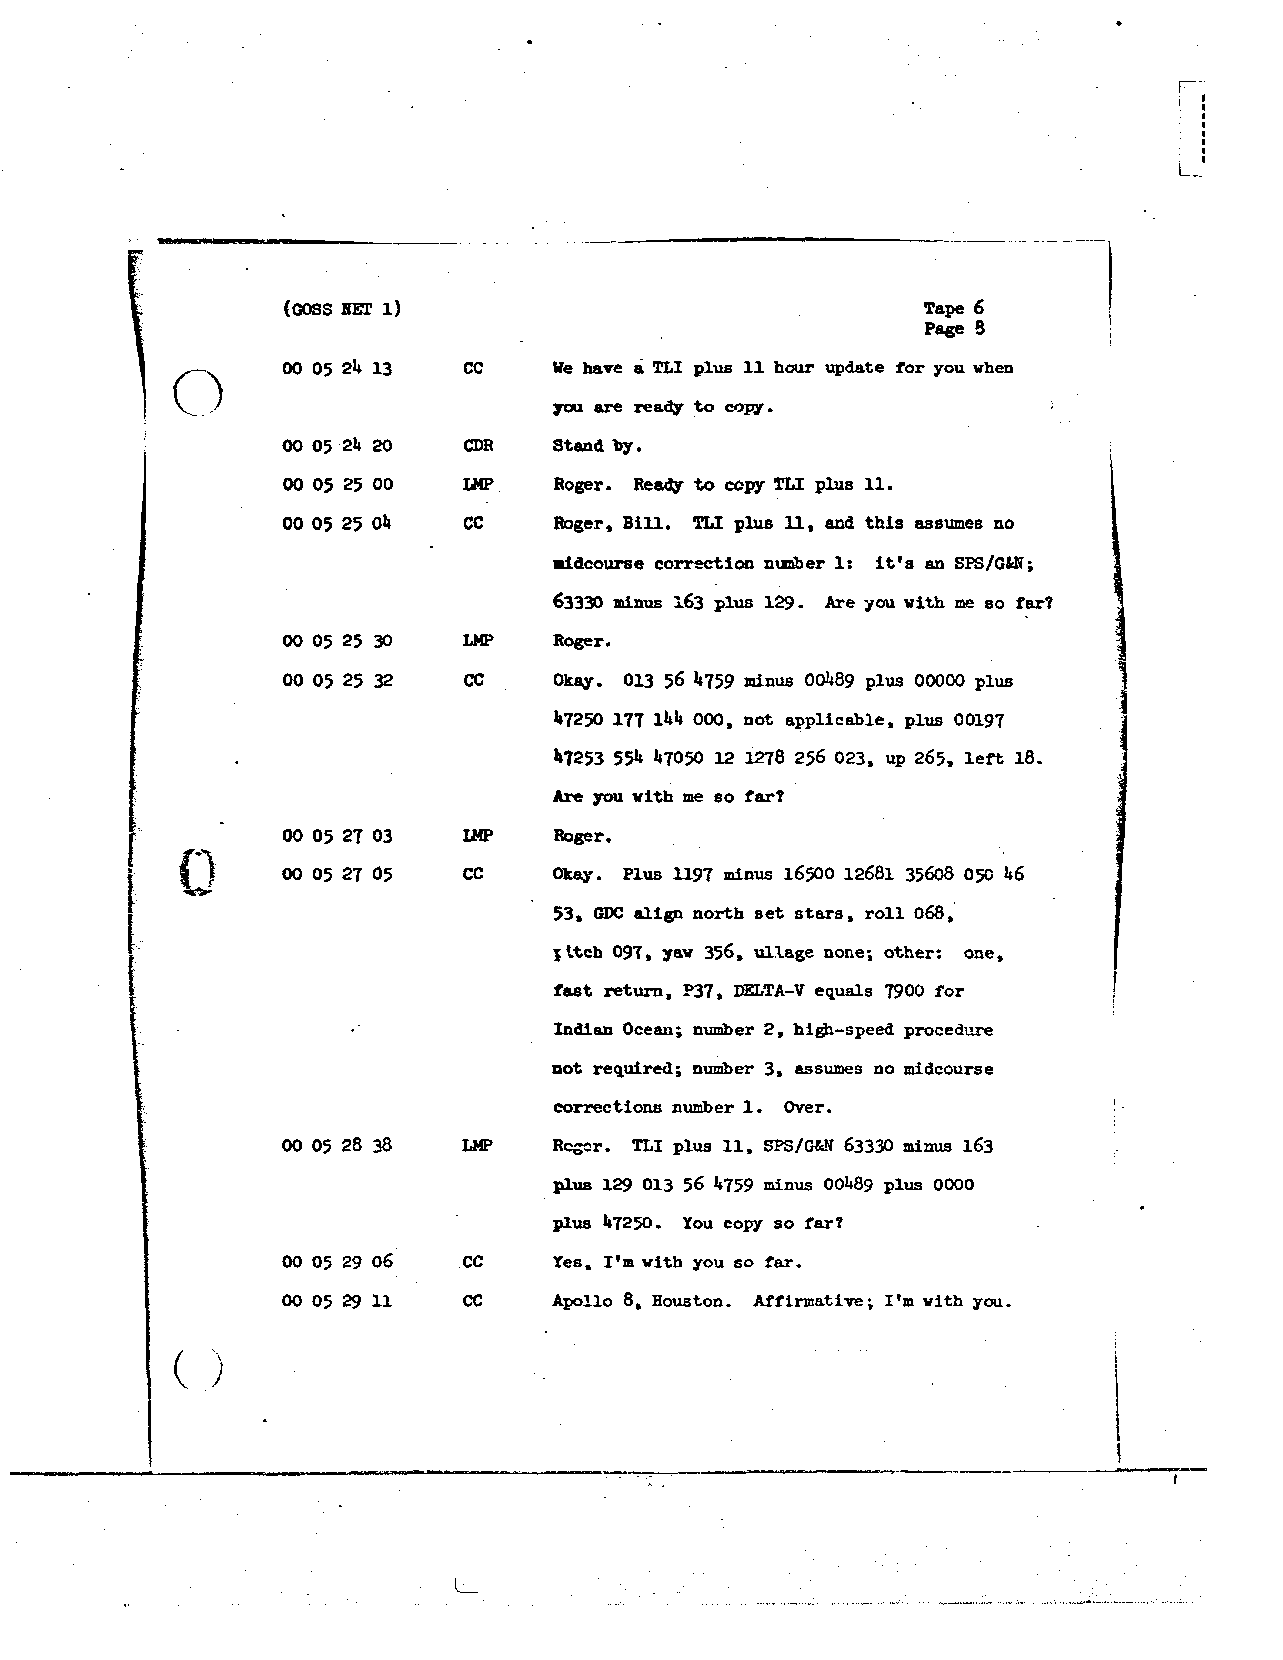 Page 54 of Apollo 8’s original transcript